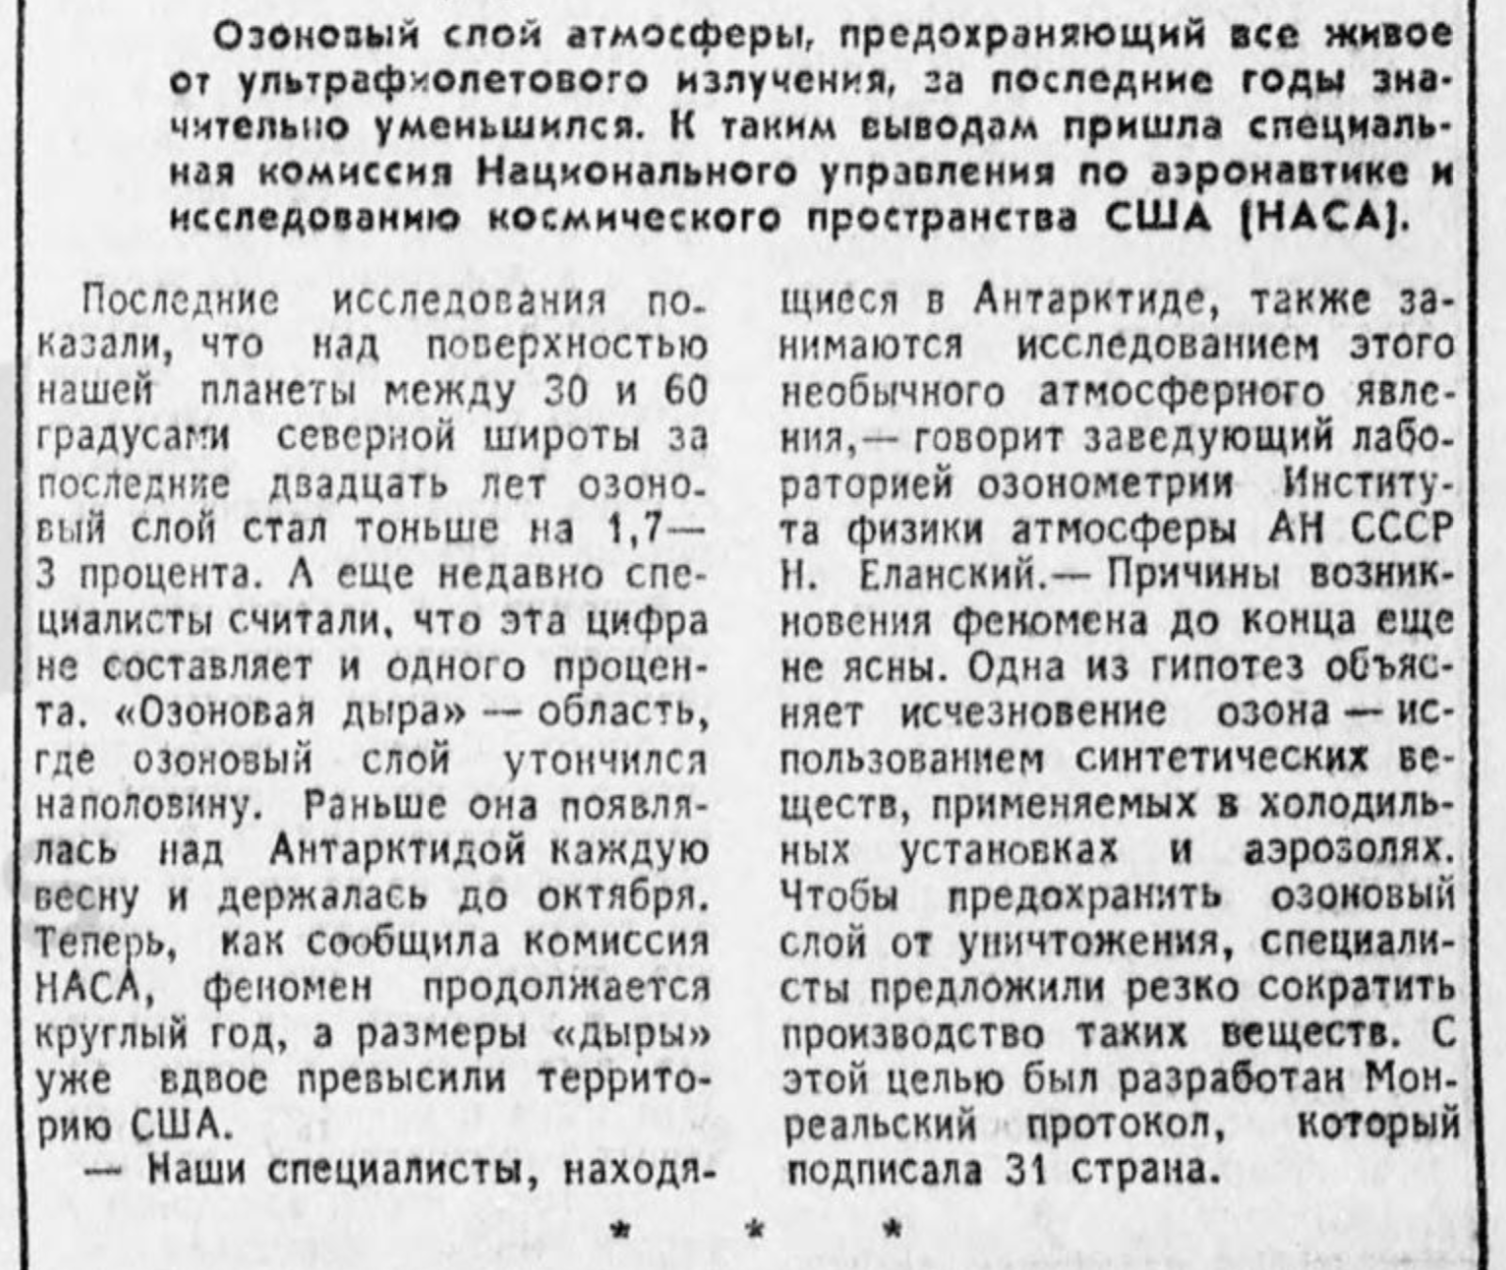 Заметка об озоновой дыре в газете “Труд”, № 70, 26 марта 1988 года